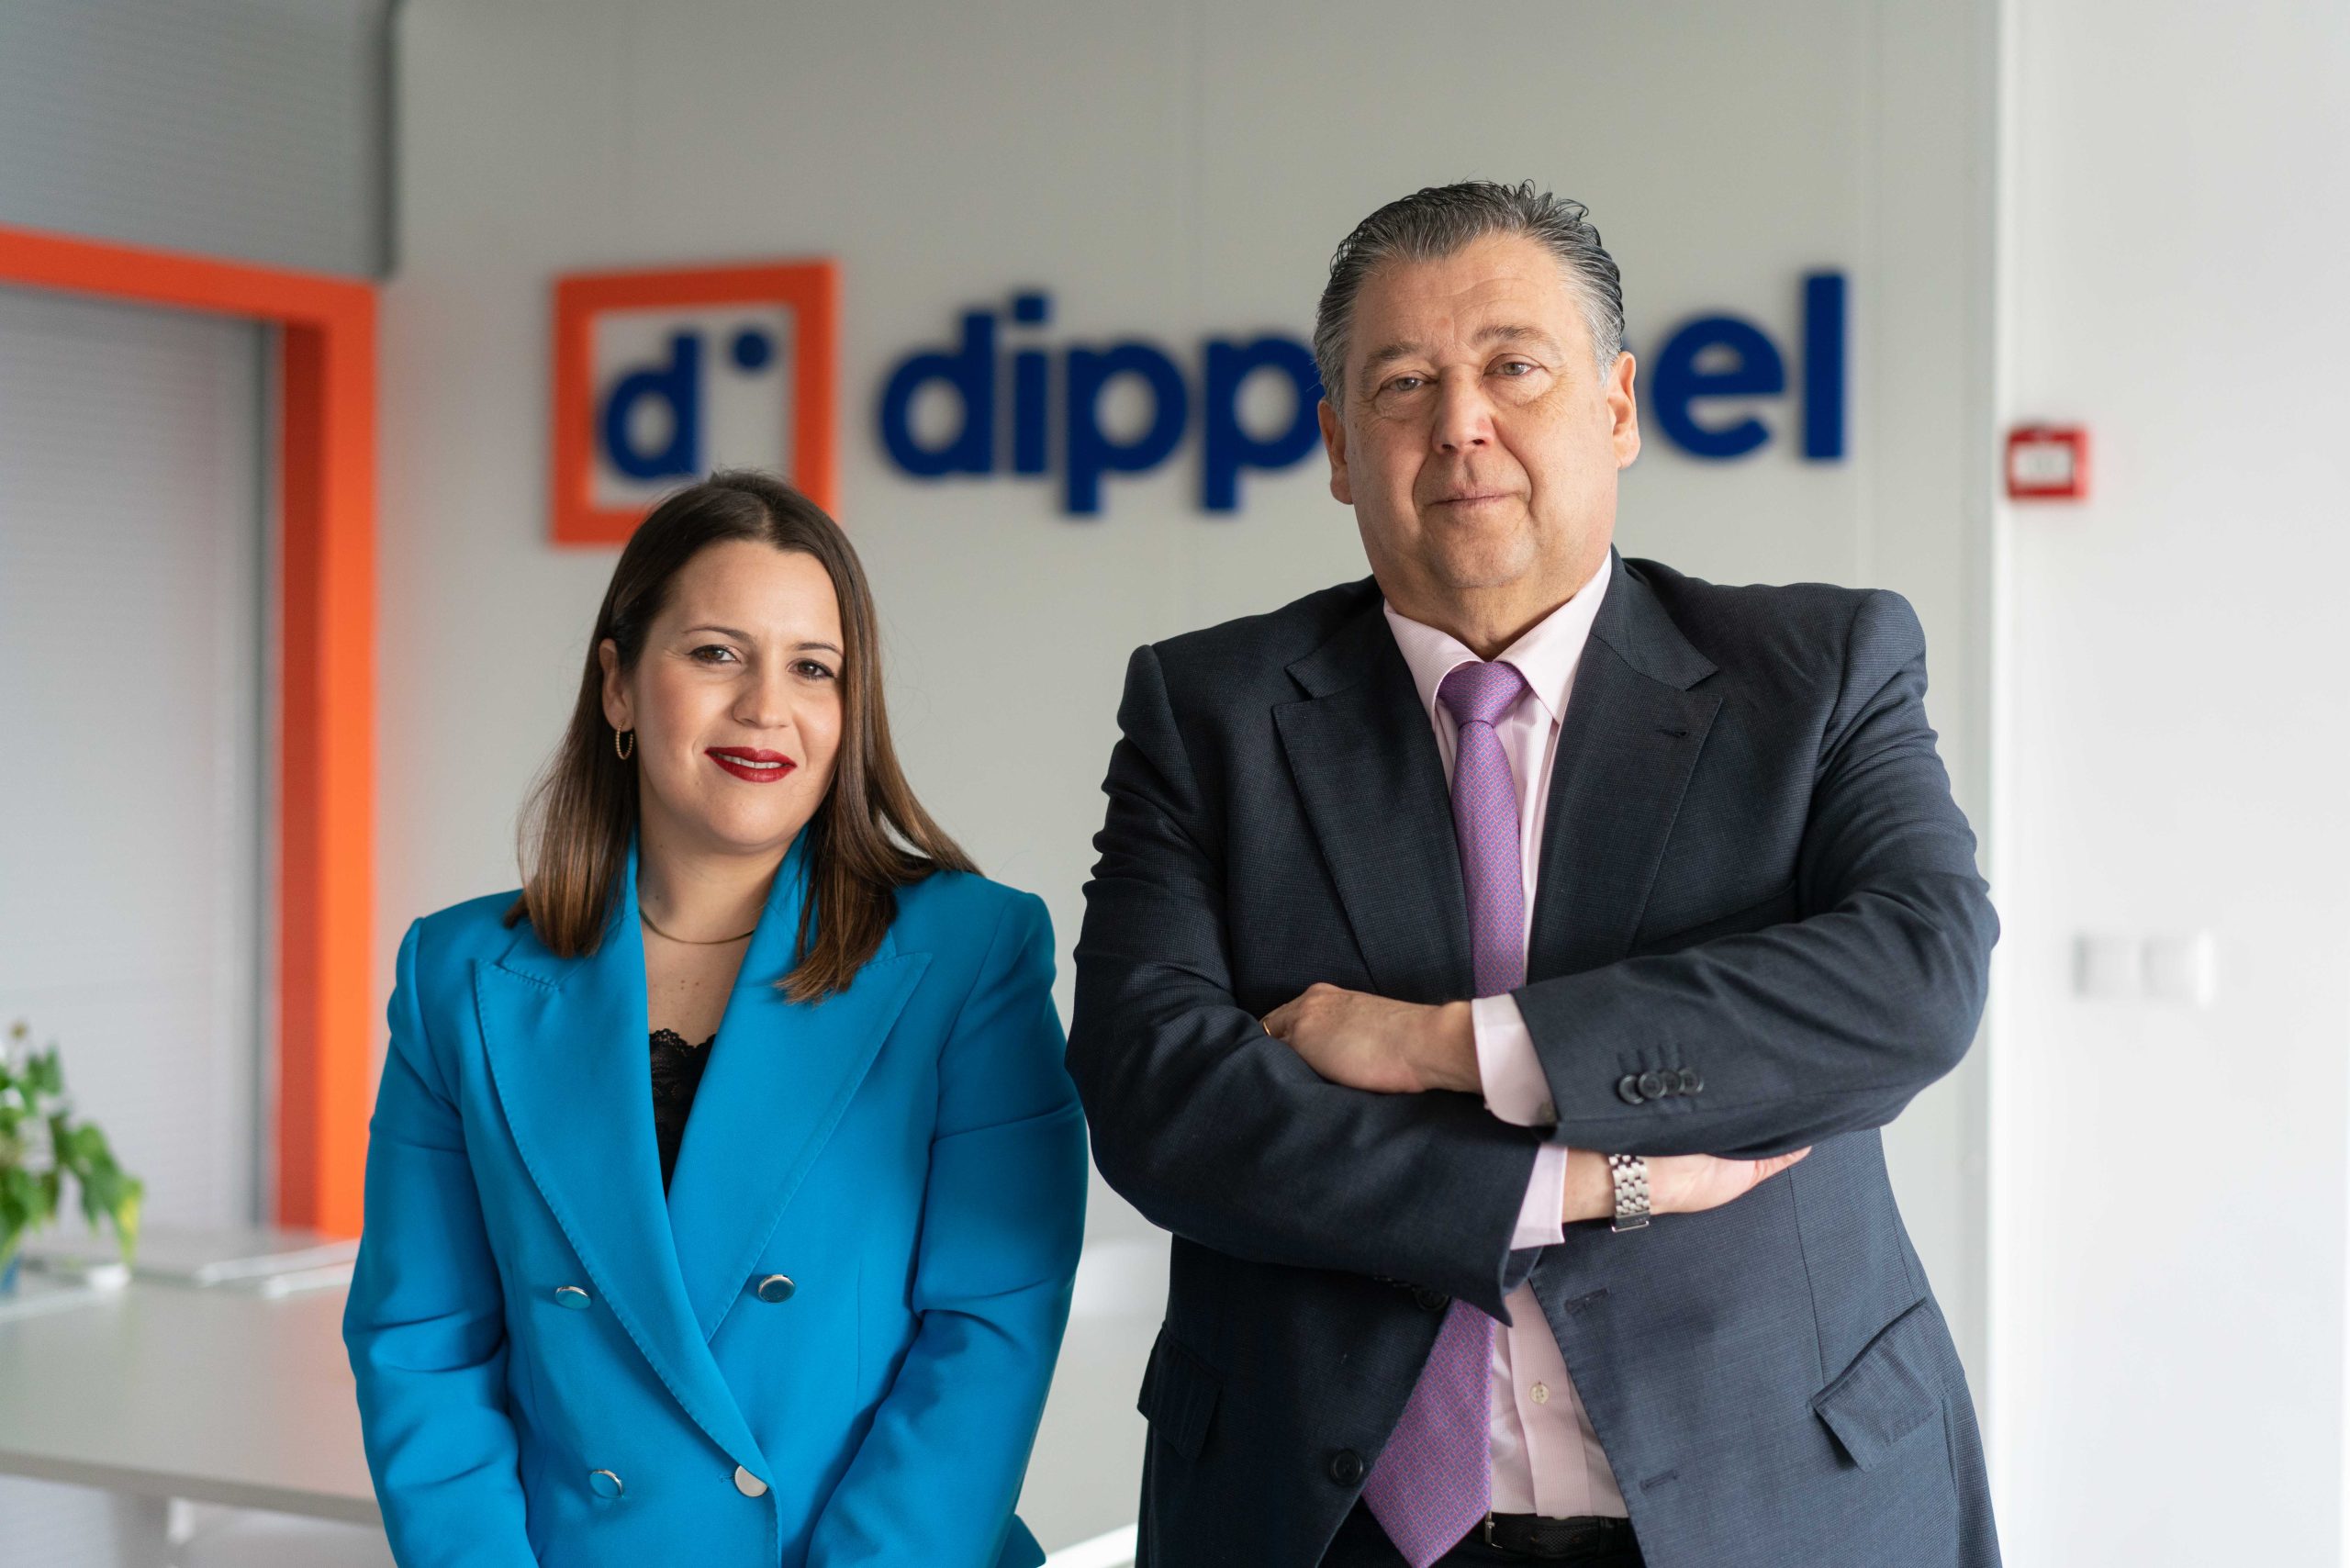 Dippanel, que opera en tres continentes con sus puertas frigoríficas, amplía sus servicios con una nueva tienda online